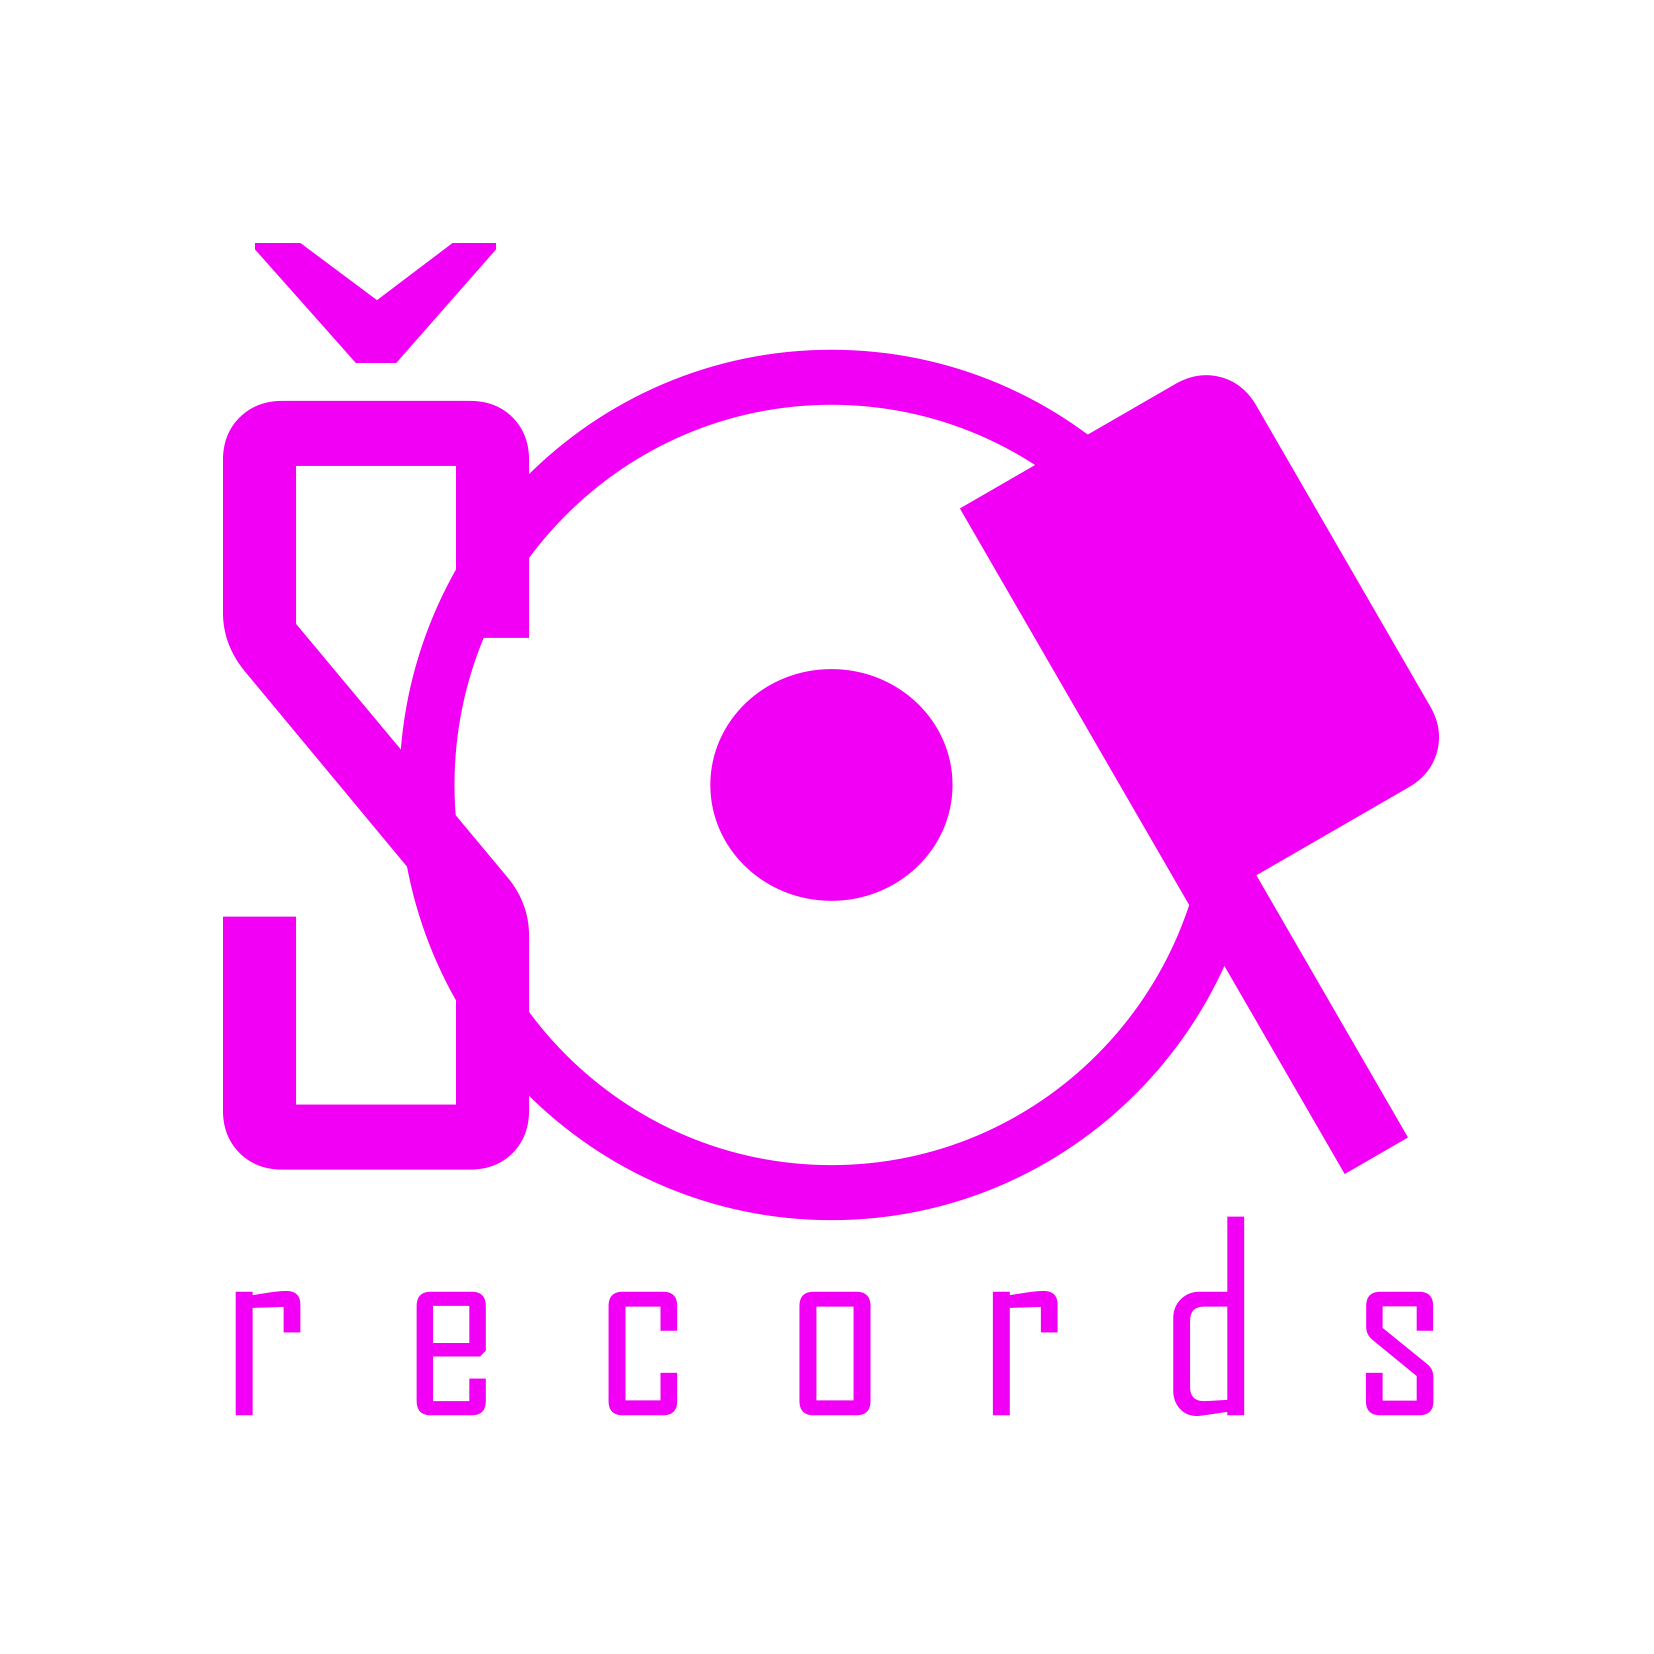 ŠOP Records